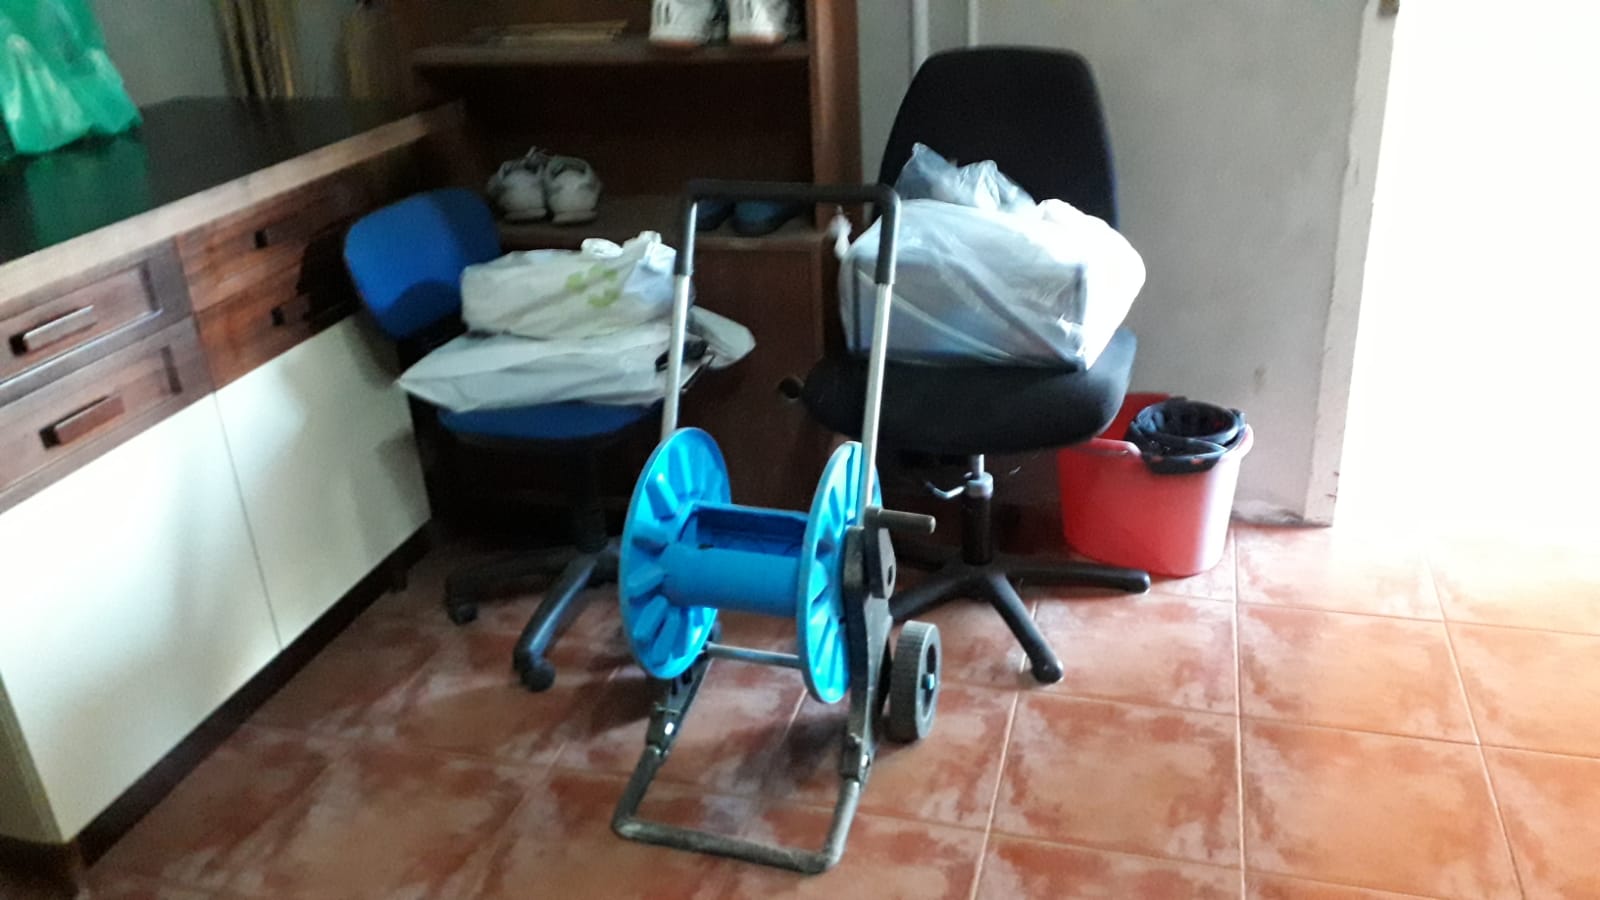 Servicio de recogida y reciclaje de muebles, electrodomésticos y basura en Sant Jaume dels Domenys - ¡Ahorra tiempo y esfuerzo!